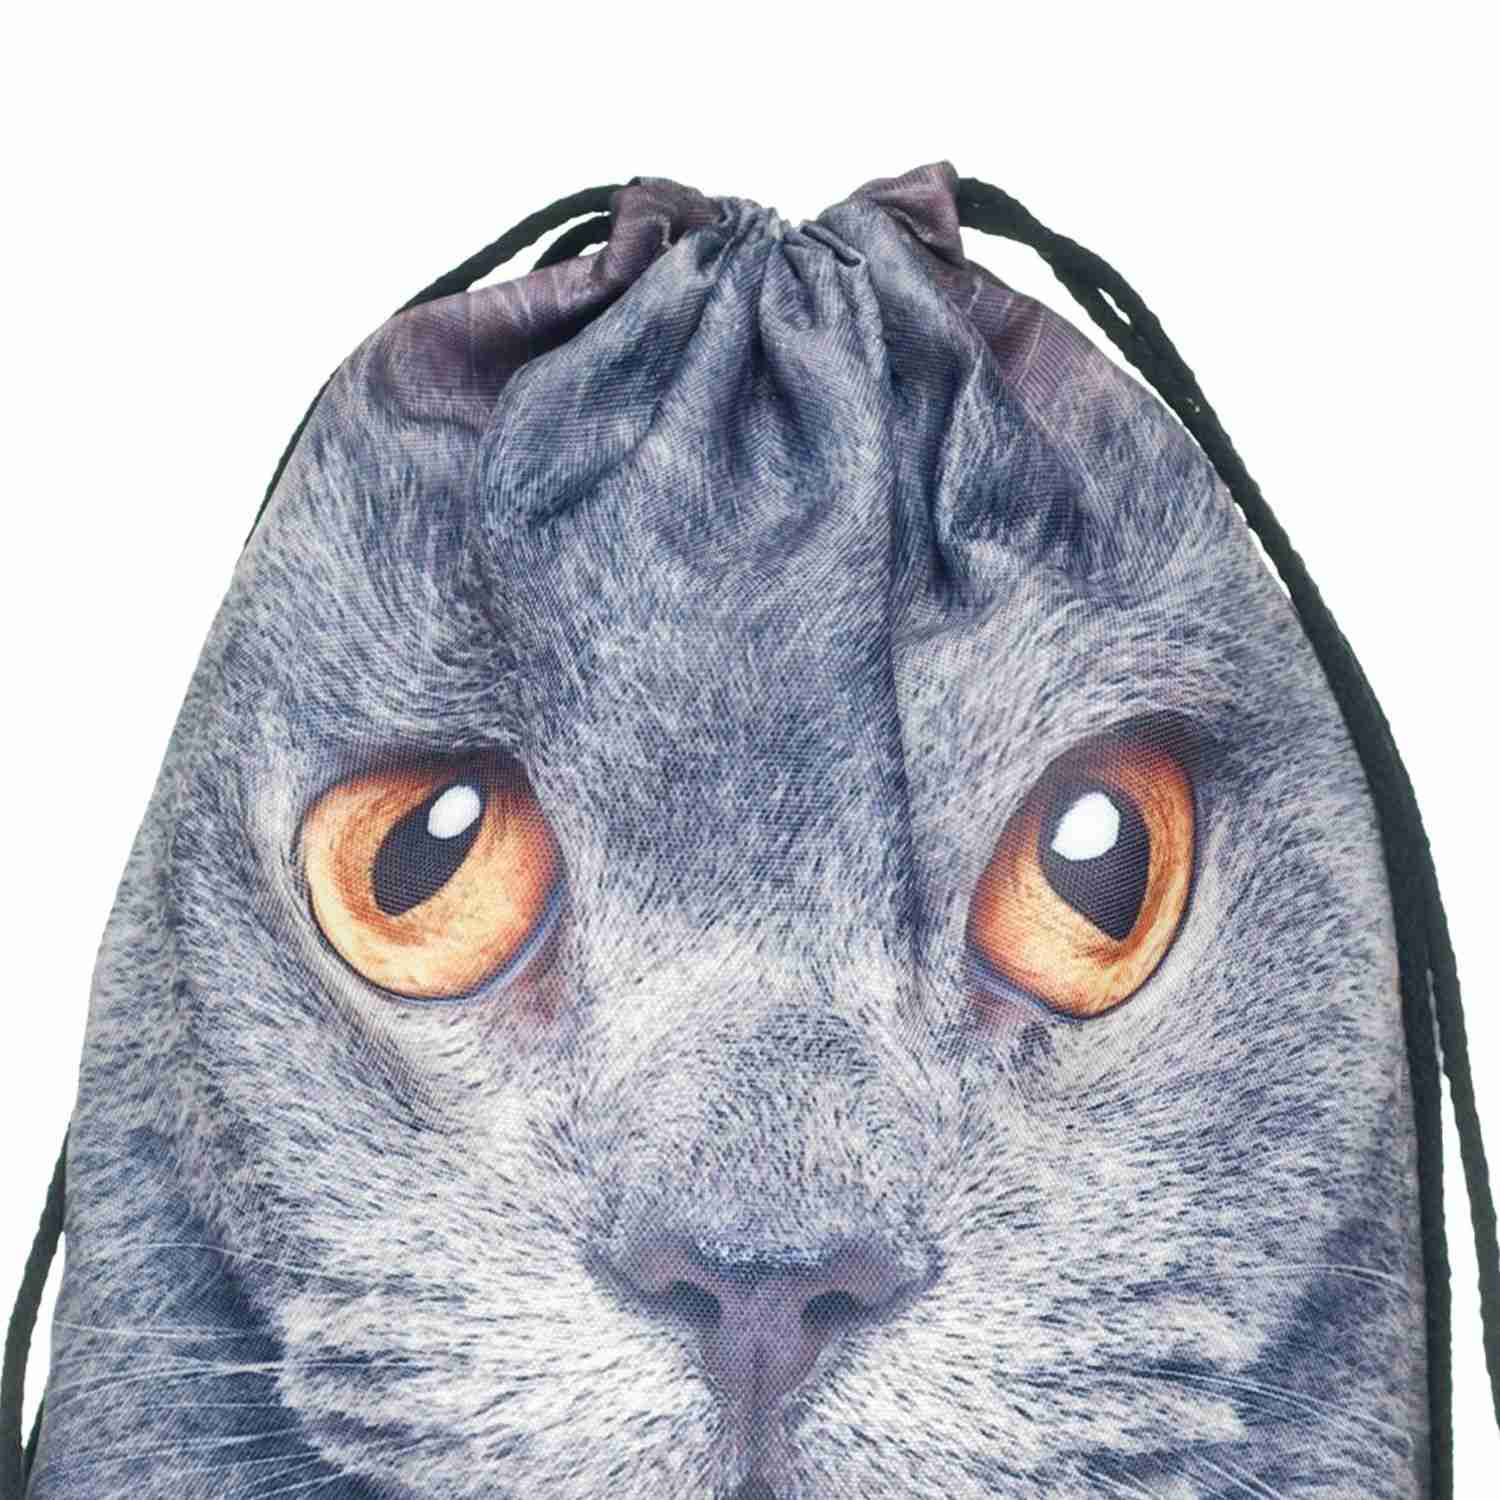 Men's Women's Kids bag Teenage Drawstring Bag Shoulder School Backpack Rucksack backpack String Travel Gym(cat) - ebowsos